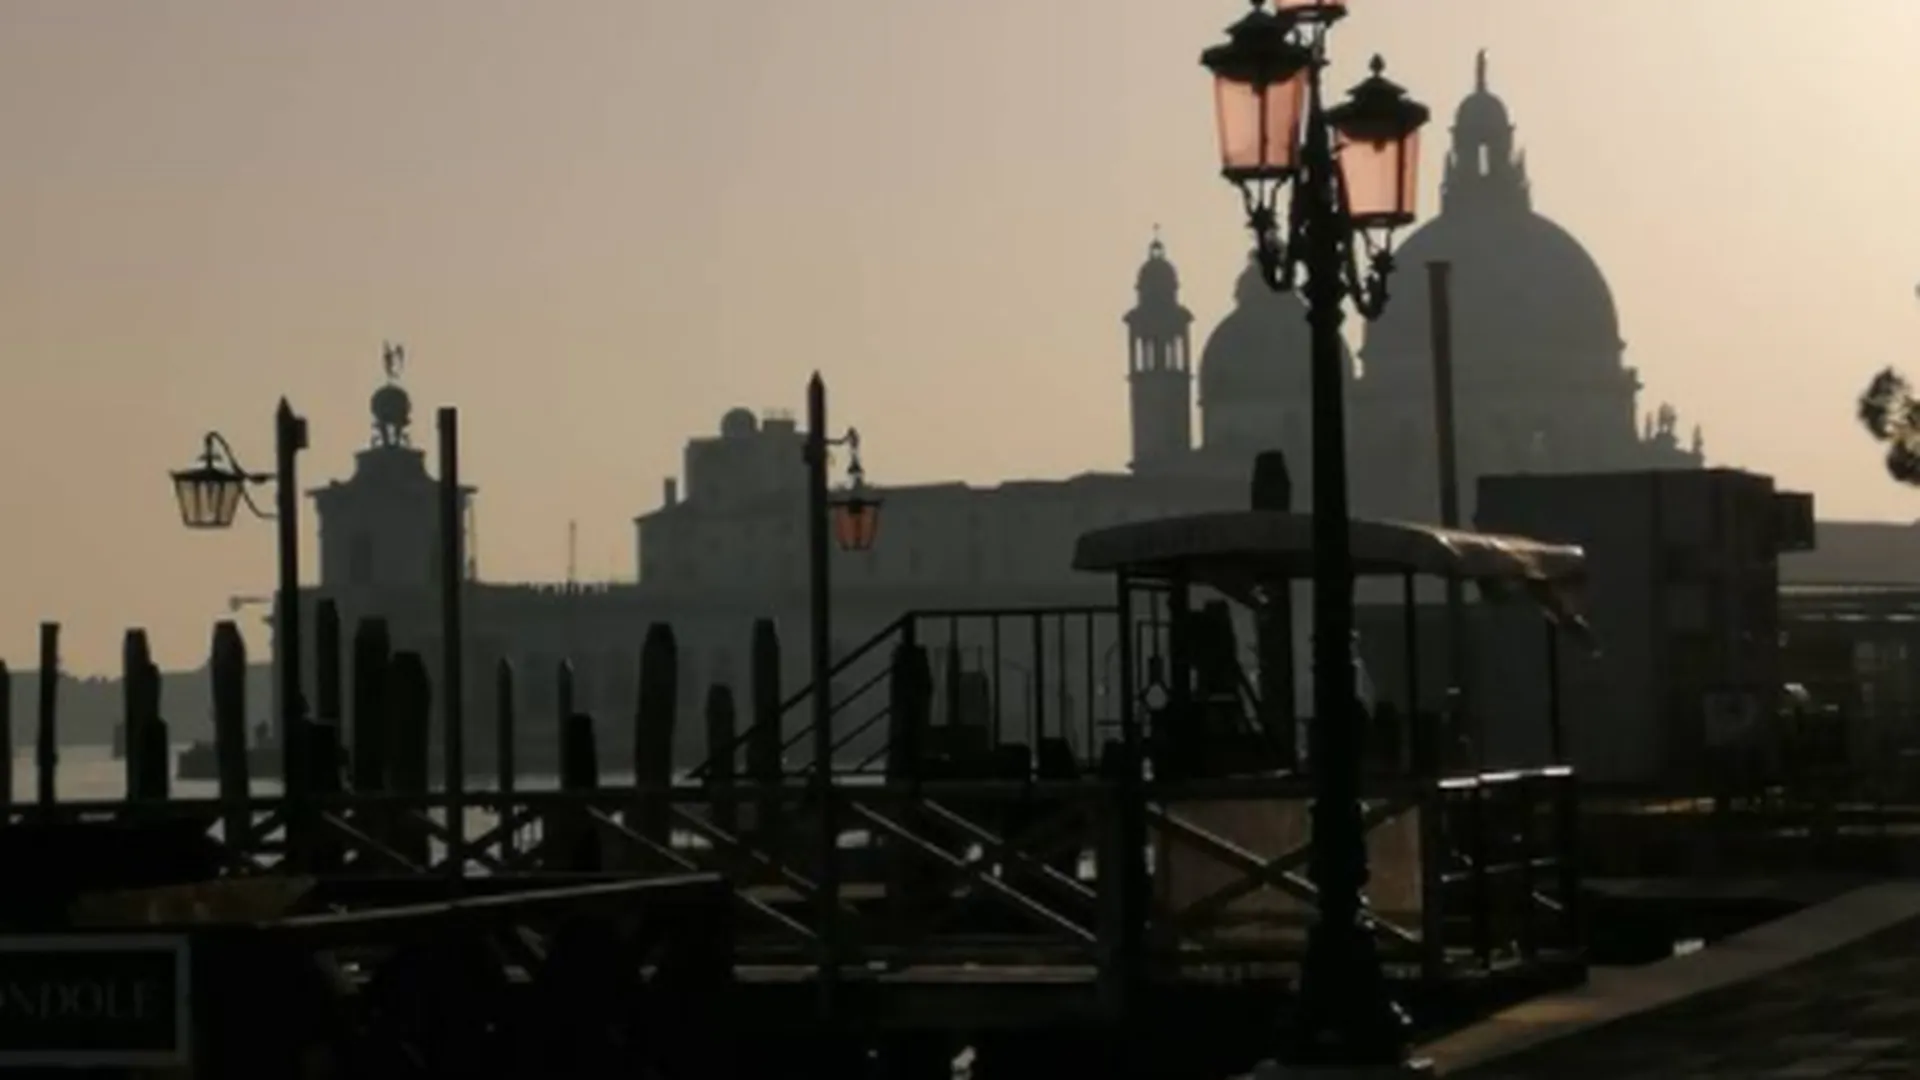 Сухие каналы Венеции — сигнал климатического бедствия. Надолго ли там пришвартовали гондолы?